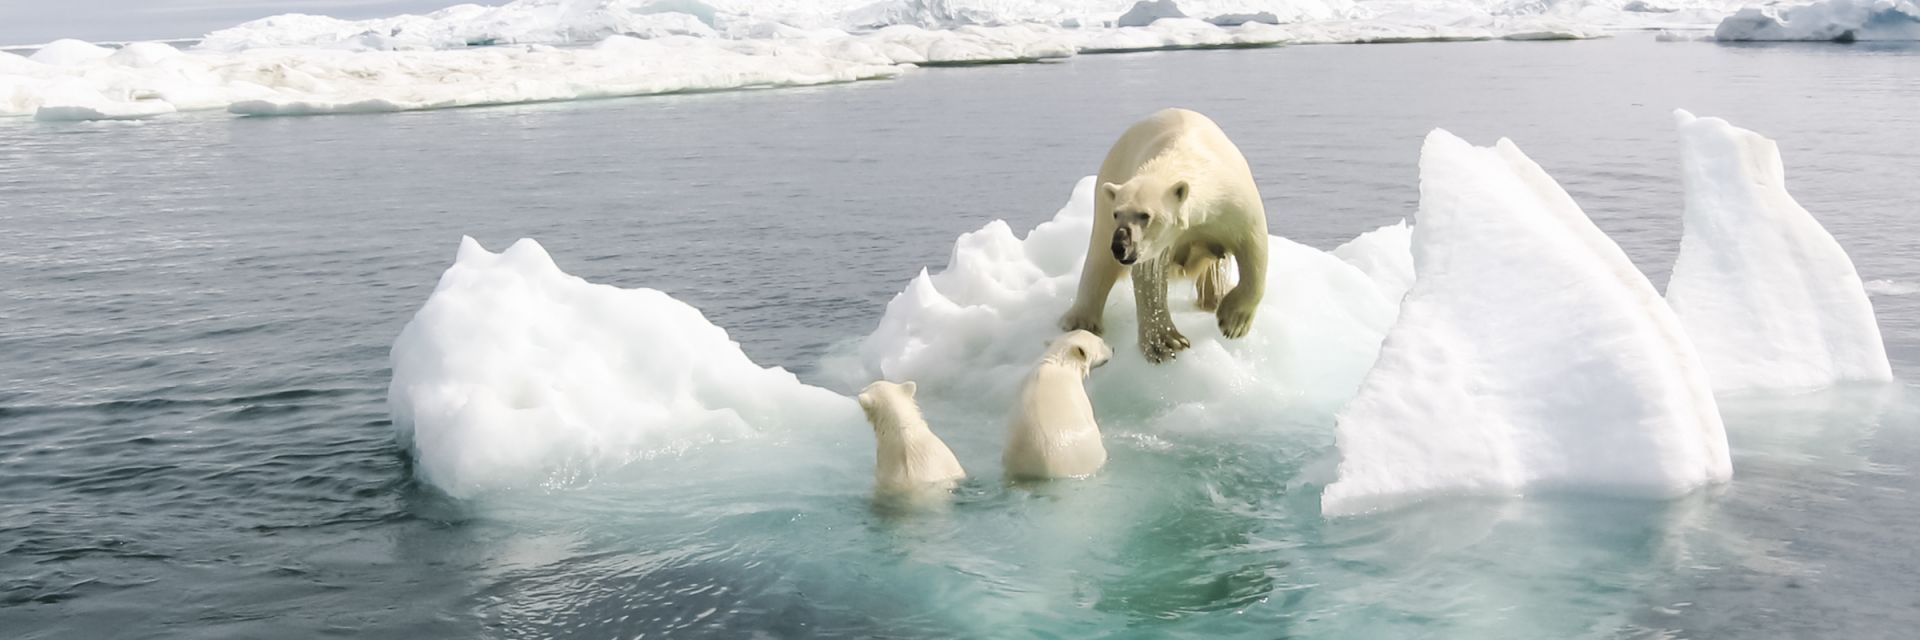 Арктика може  да остане без лед  до 2035 г. 